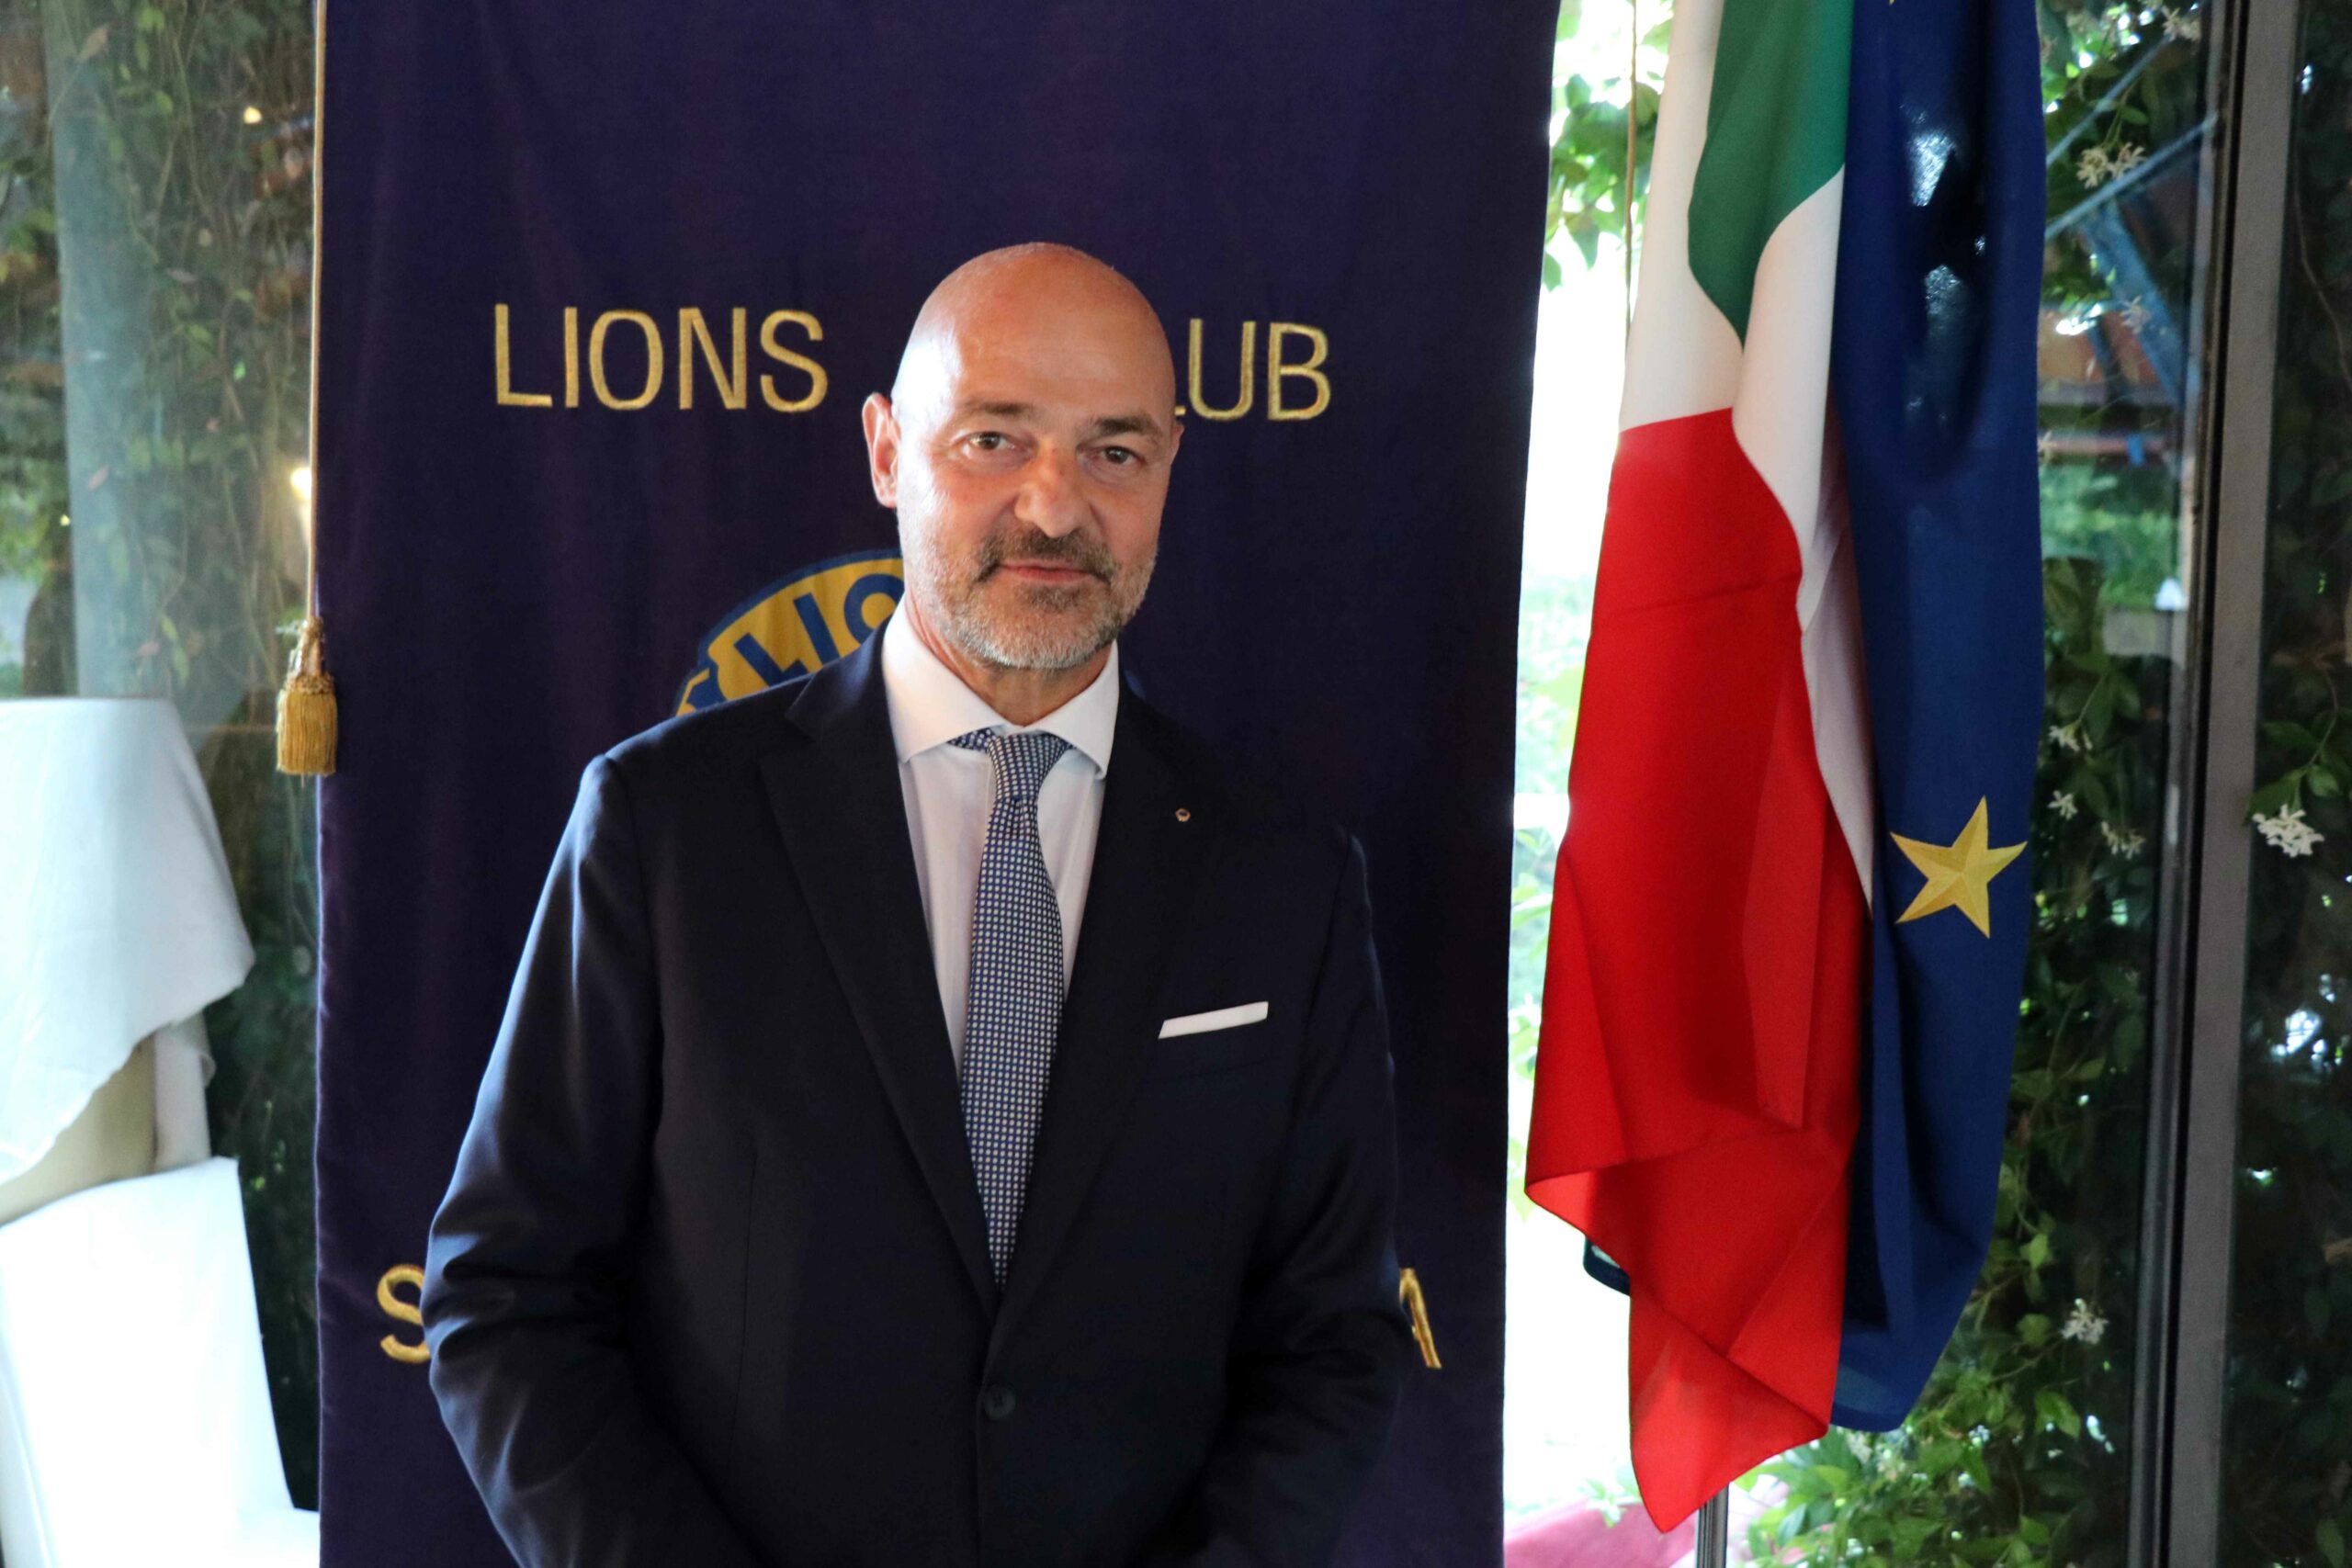 Lions Seregno Mario Carlo Novara